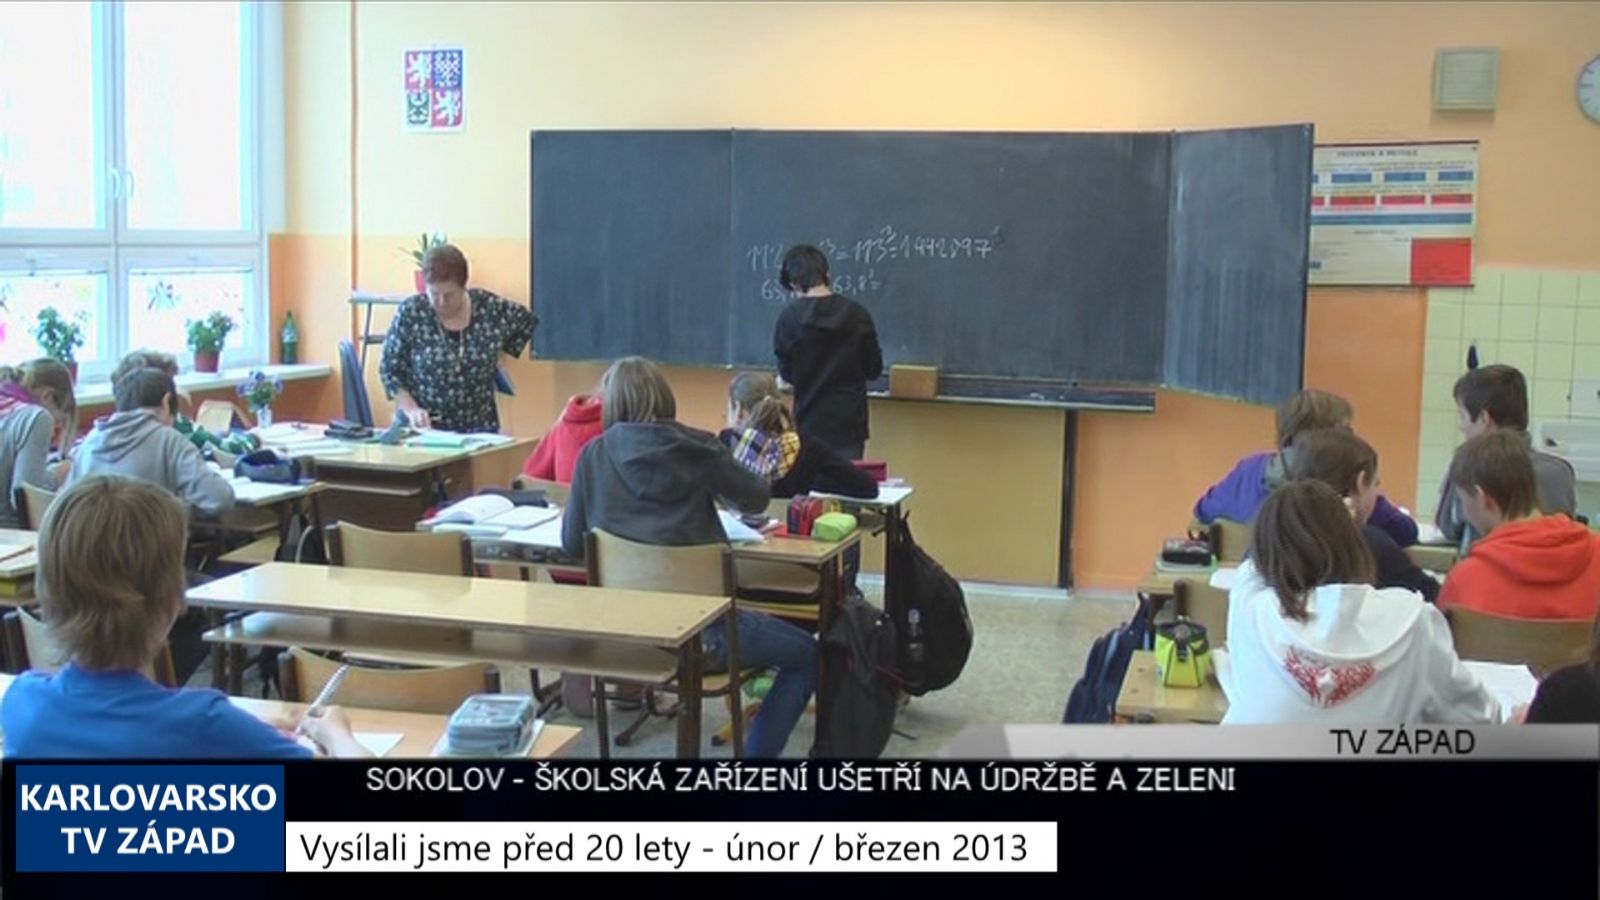 2013 – Sokolov: Školská zařízení ušetří na údržbě a zeleni (4899) (TV Západ)